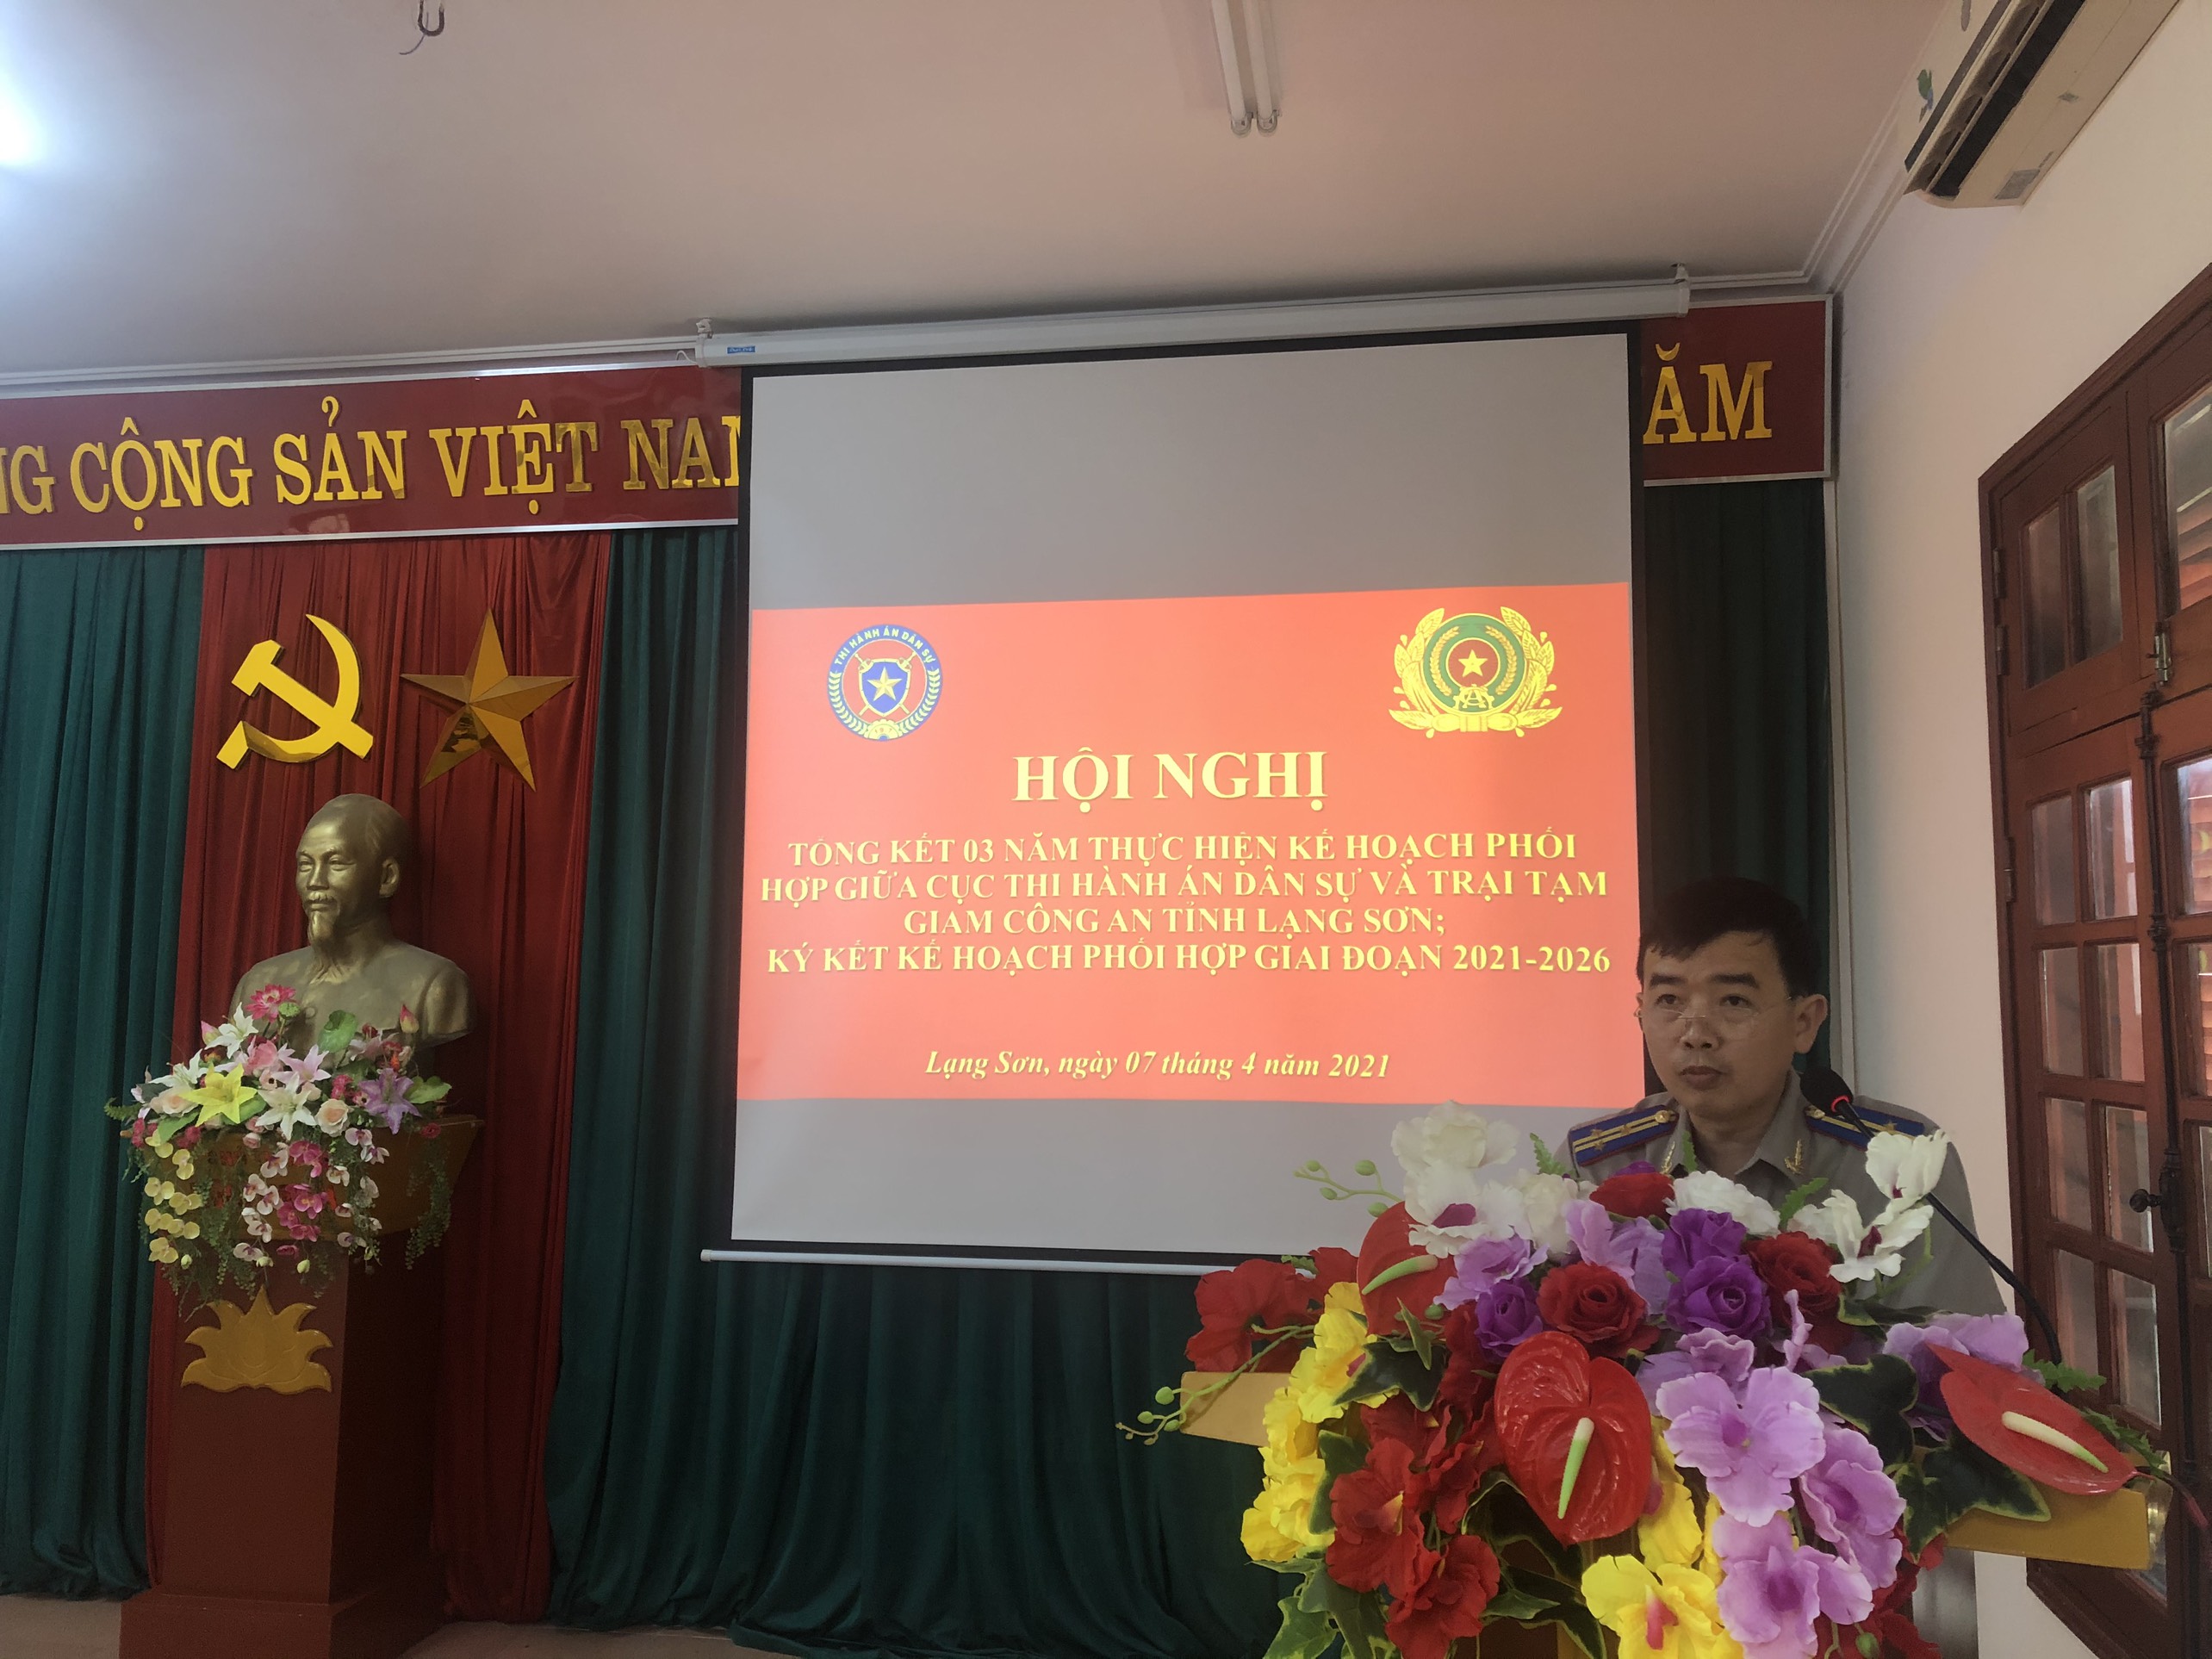 Lạng Sơn: Tổng kết 03 năm thực hiện Kế hoạch phối hợp giữa Cục THADS tỉnh và Trại tạm giam Công an tỉnh